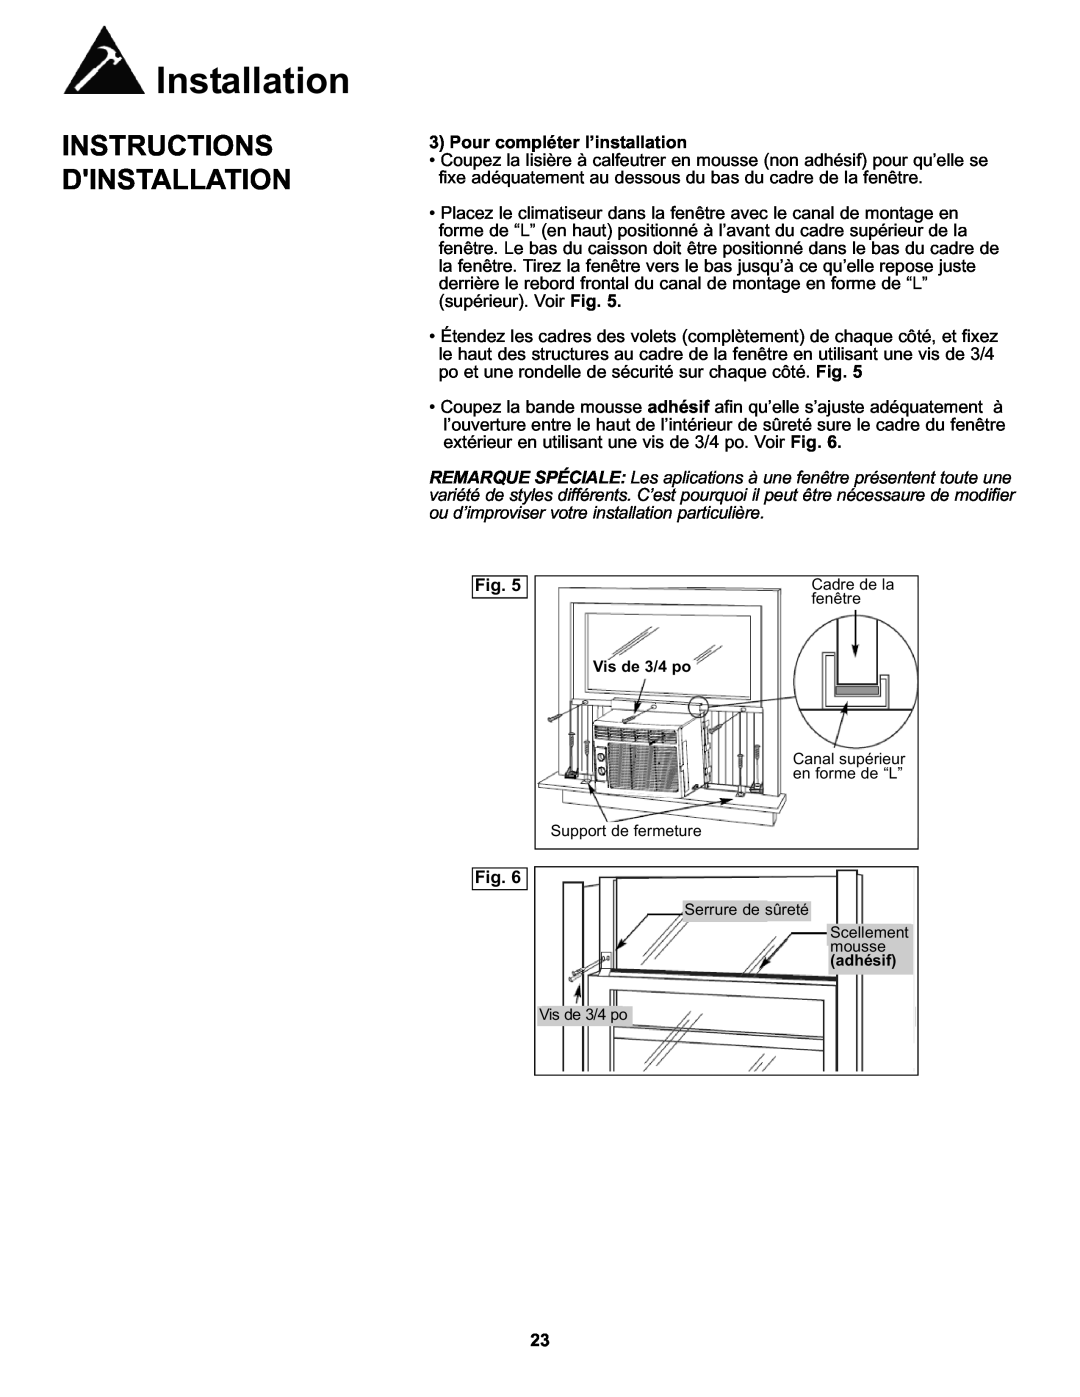 Danby DAC8010E, DAC8011E manual Pour compléter l’installation, Installation, Instructions Dinstallation 